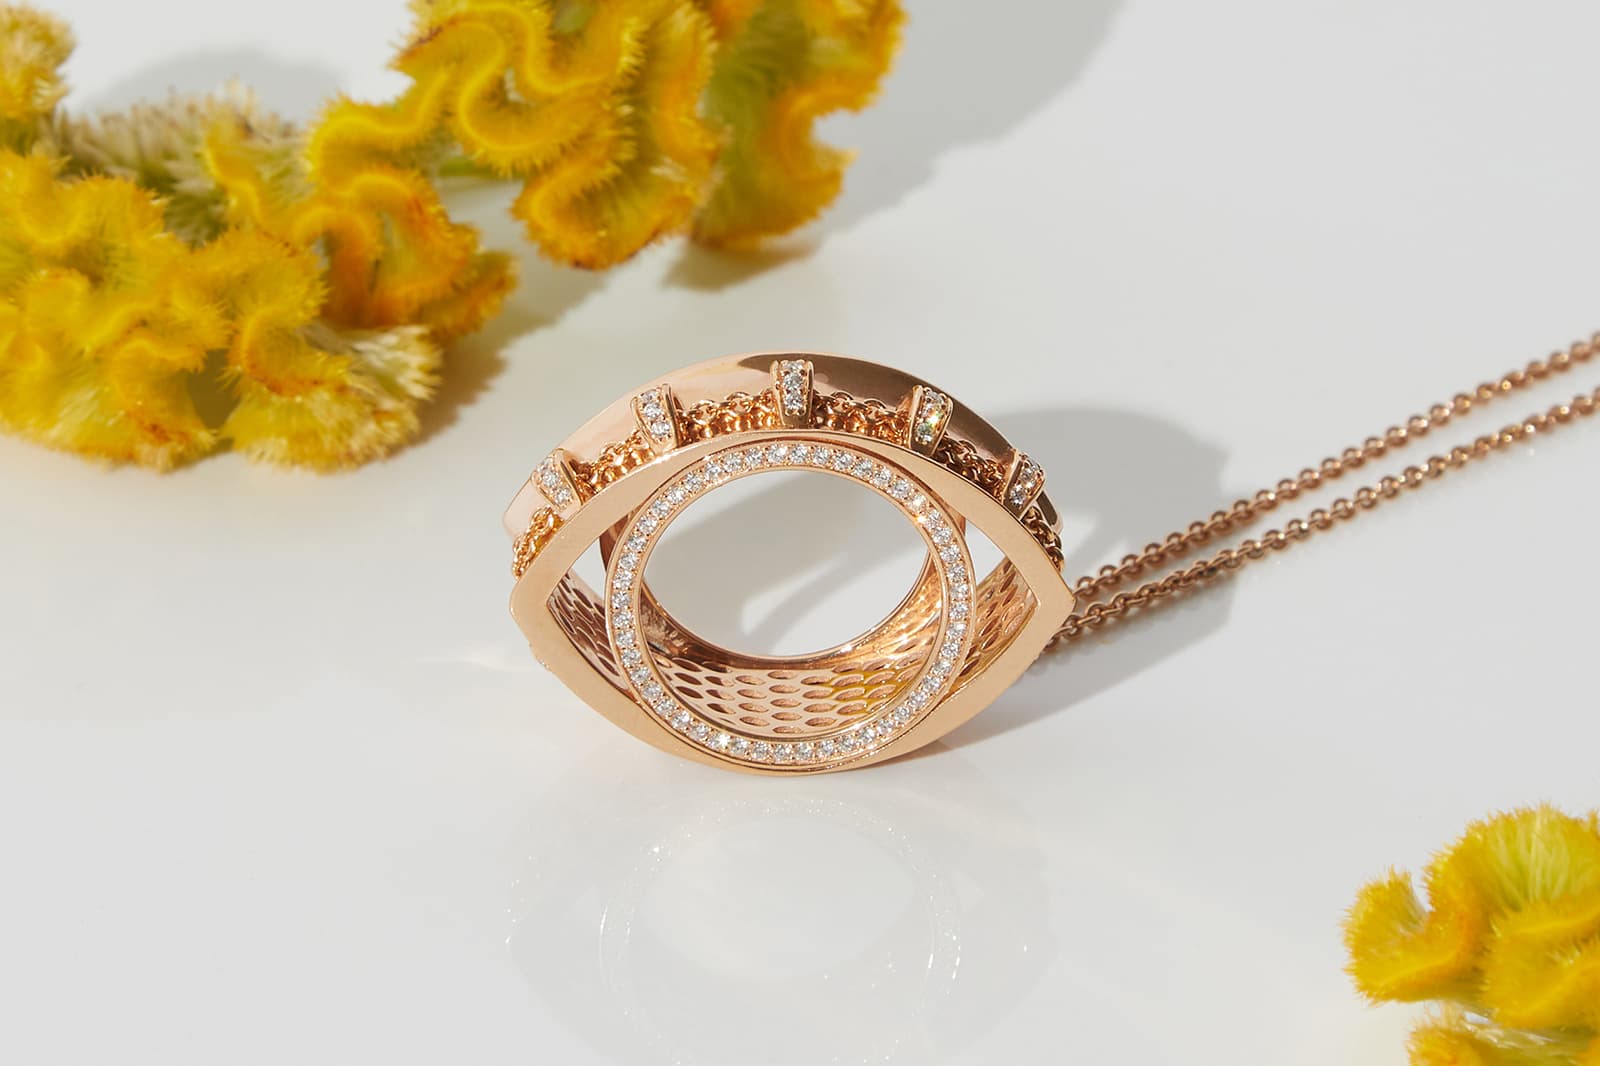 Кольцо для шарфа // кулон Fullord Eagle из розового золота с бриллиантами